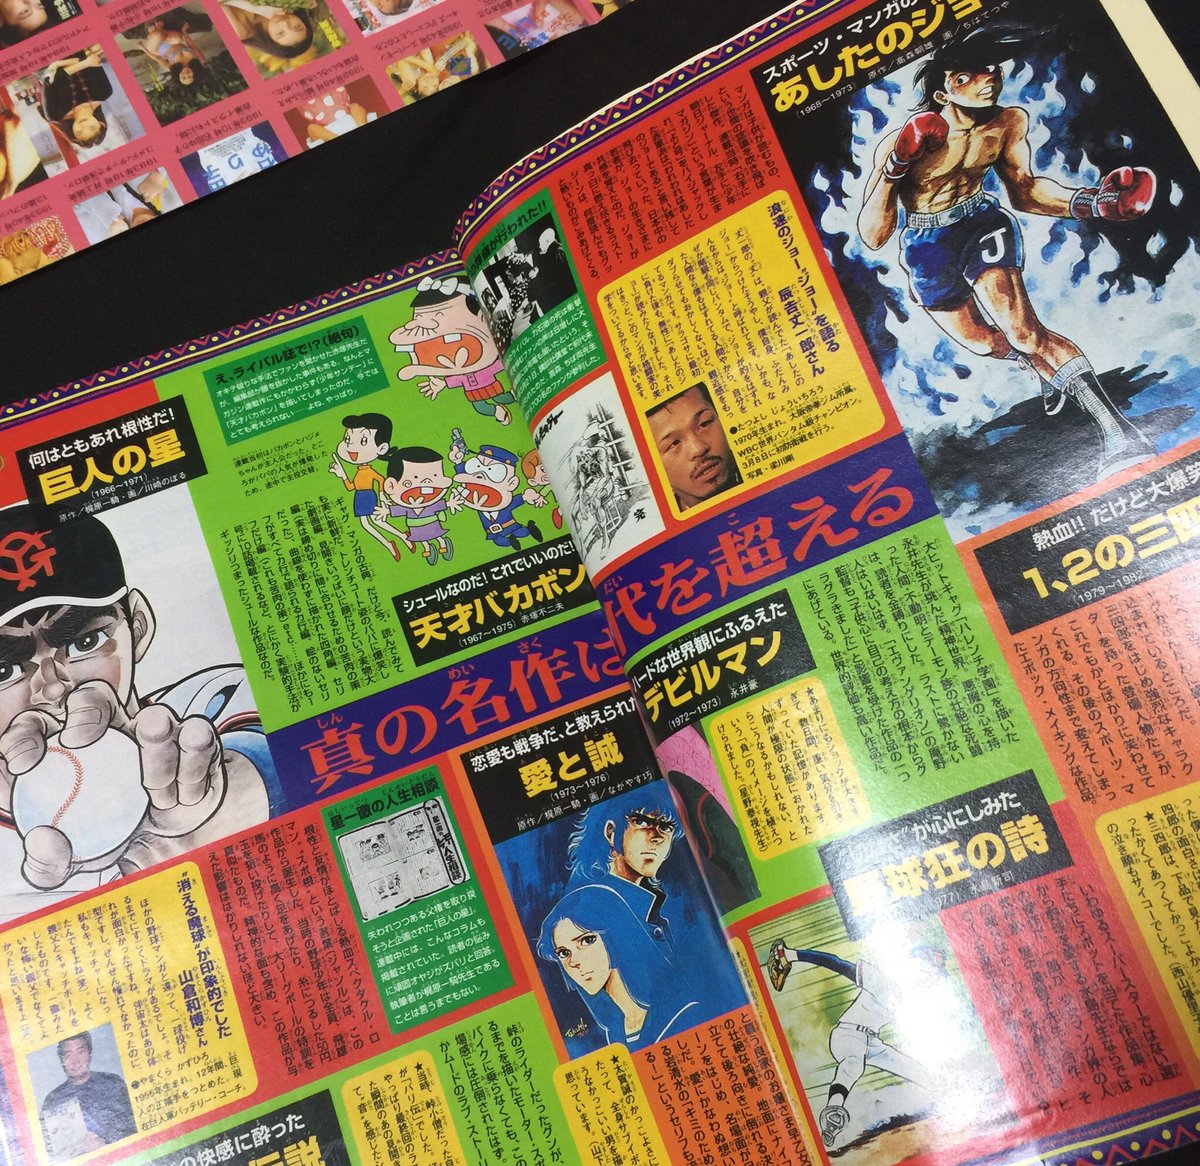 2年前に『あしたのジョーアニメ50周年記念イベント』で森川ジョージ先生が語ってくれた『はじめの一歩』が少年マガジンで天下を取った24年前の1998年13号。
付録ポスターや巻頭特集も豪華な少年マガジンでした。この時点ではじめの一歩は41巻。
#はじめの一歩 
#あしたのジョー
#少年マガジン 